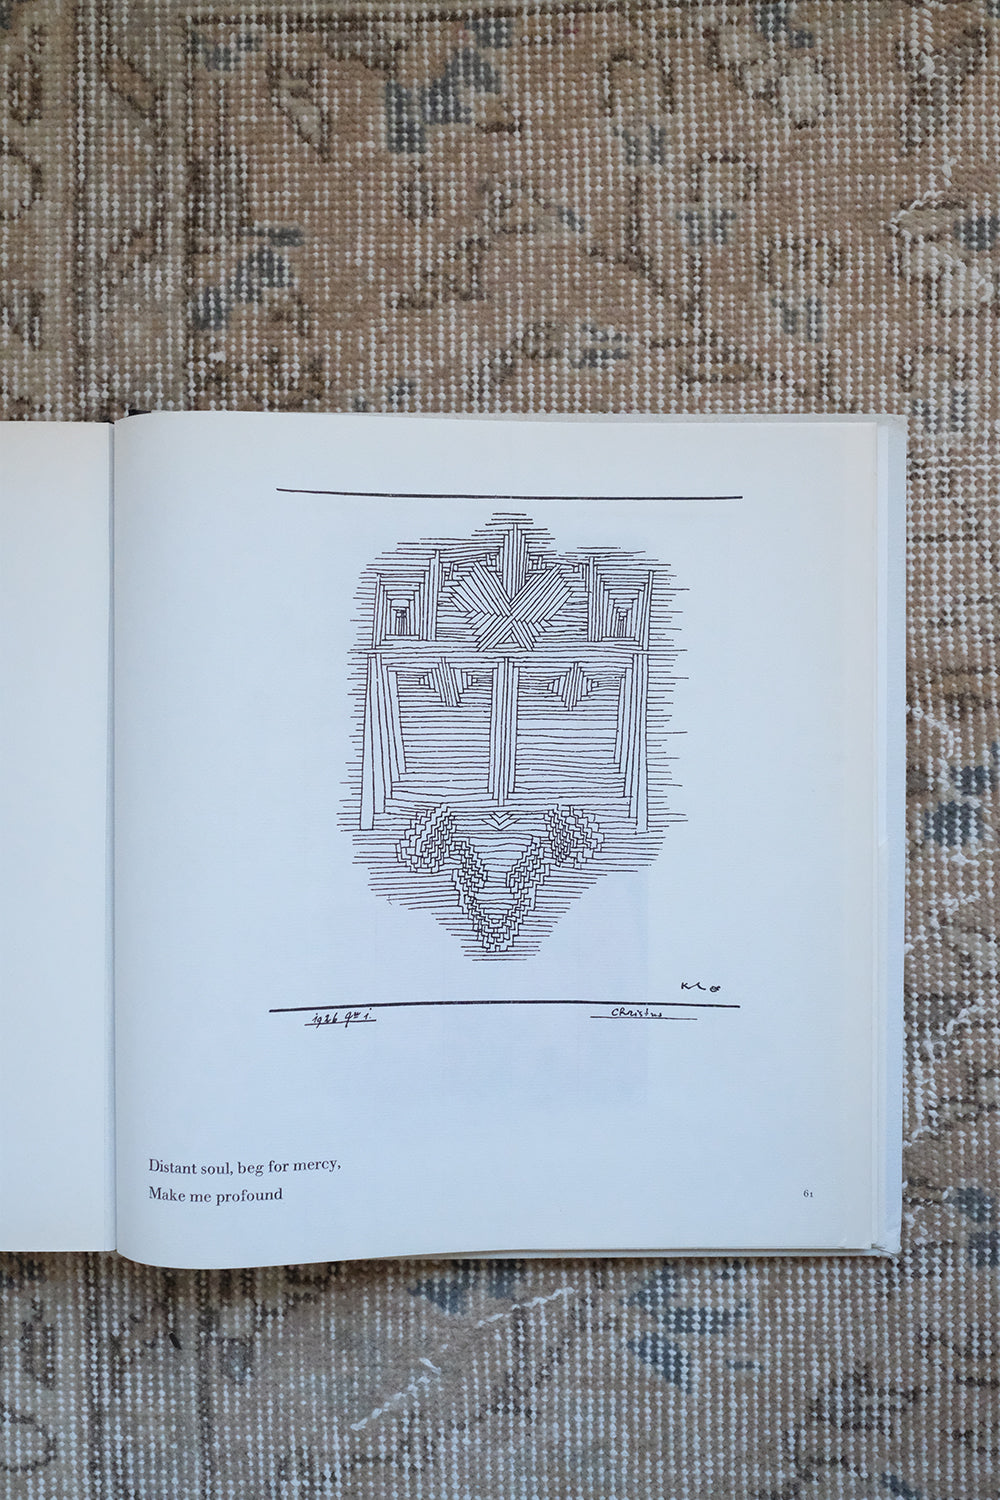 “Paul Klee: Watercolors, Drawings, Writings”